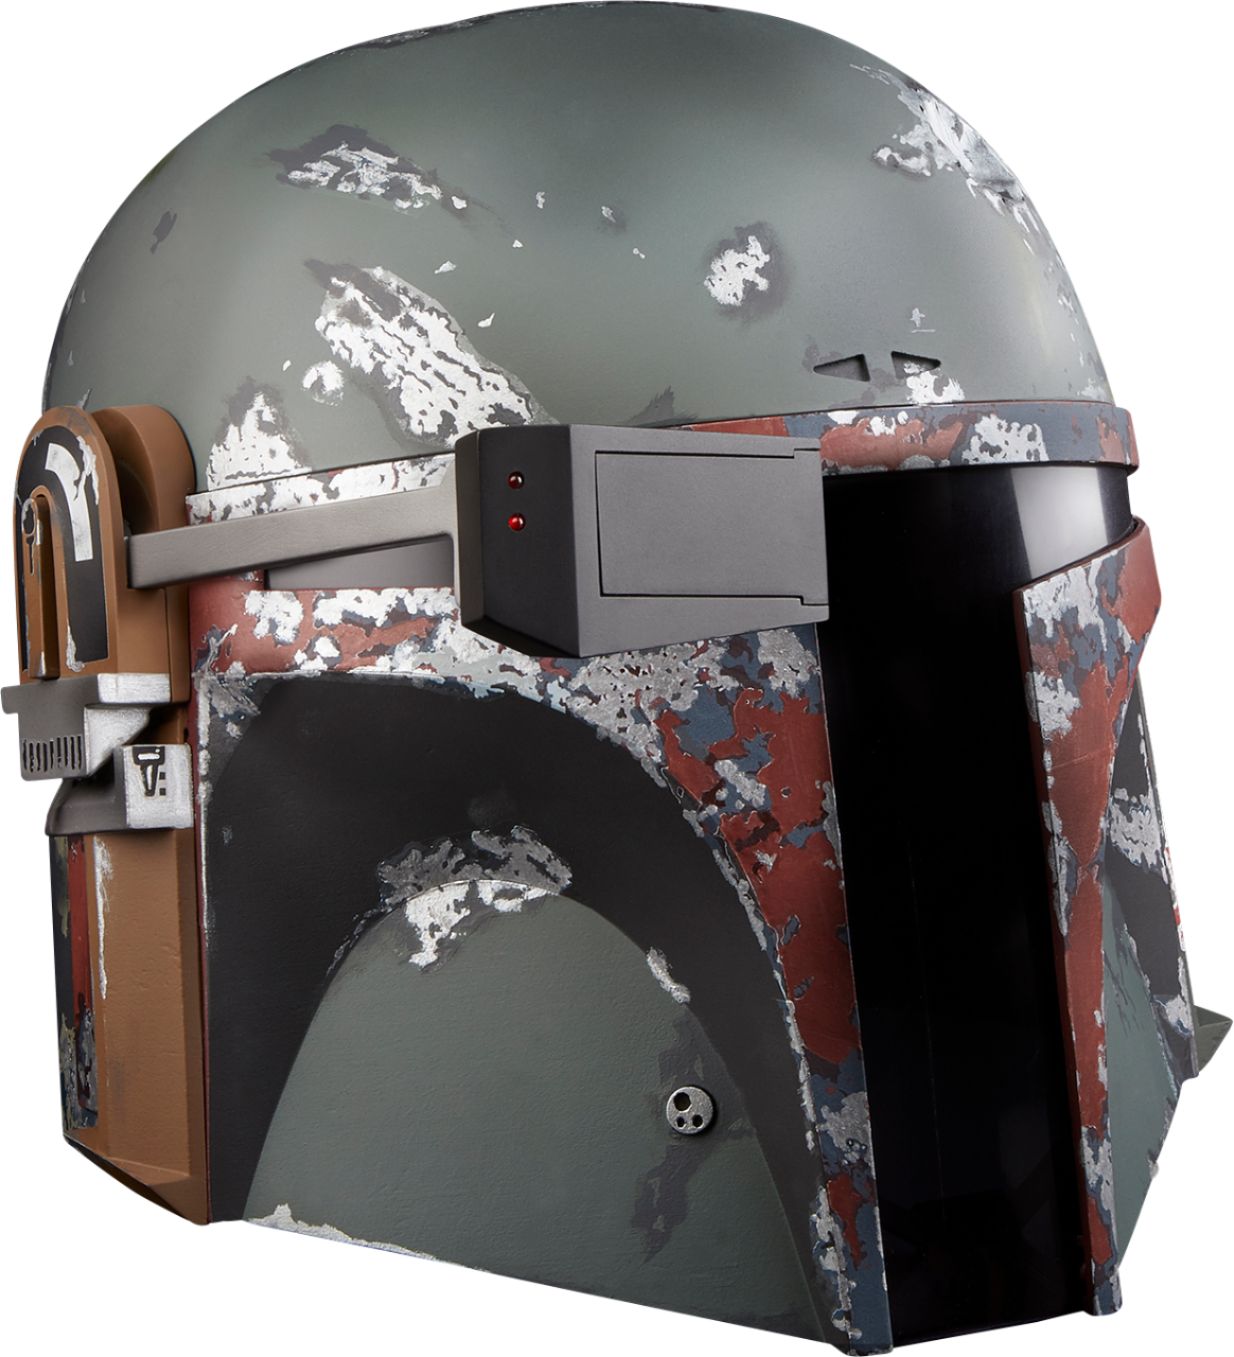 Brand new 2020 Star Wars The Black Series Boba Fett Premium Electronic Helmet 